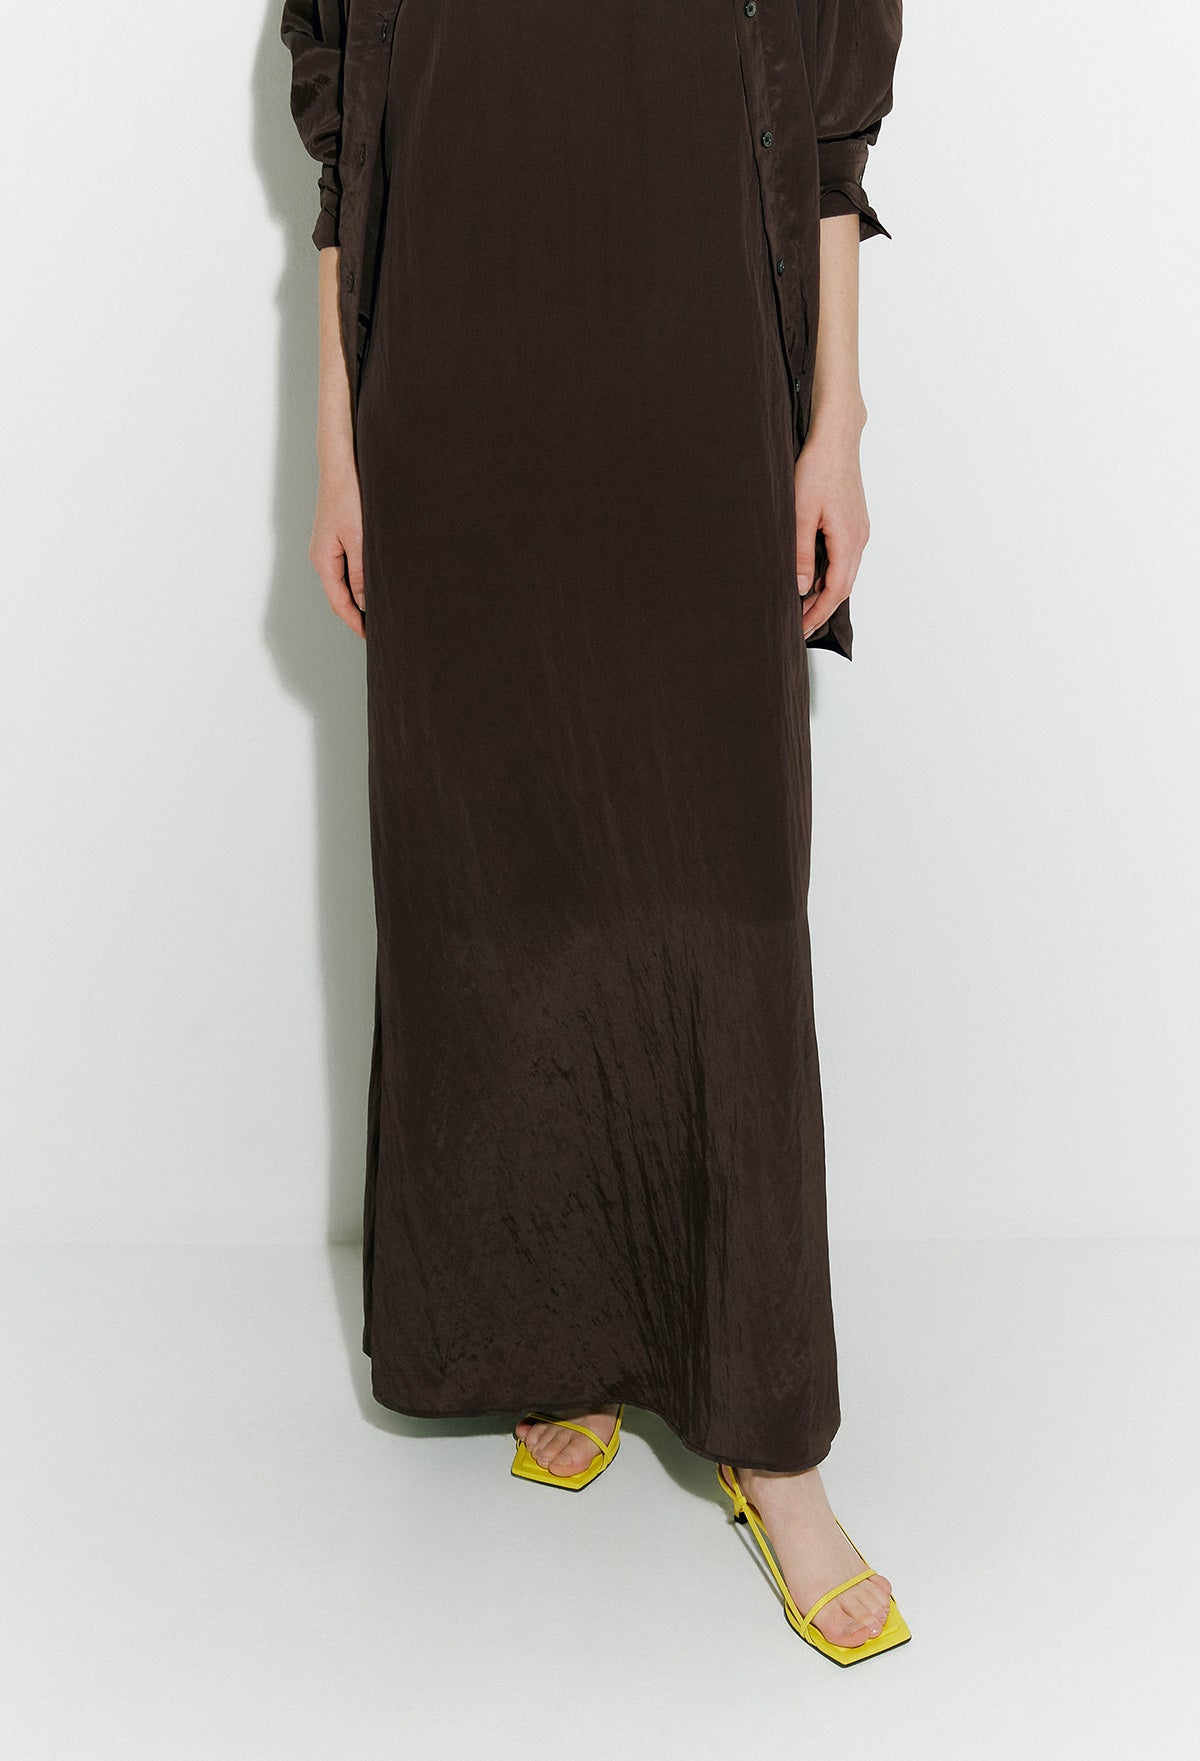 Flowing Cami Dress In Dark Brown